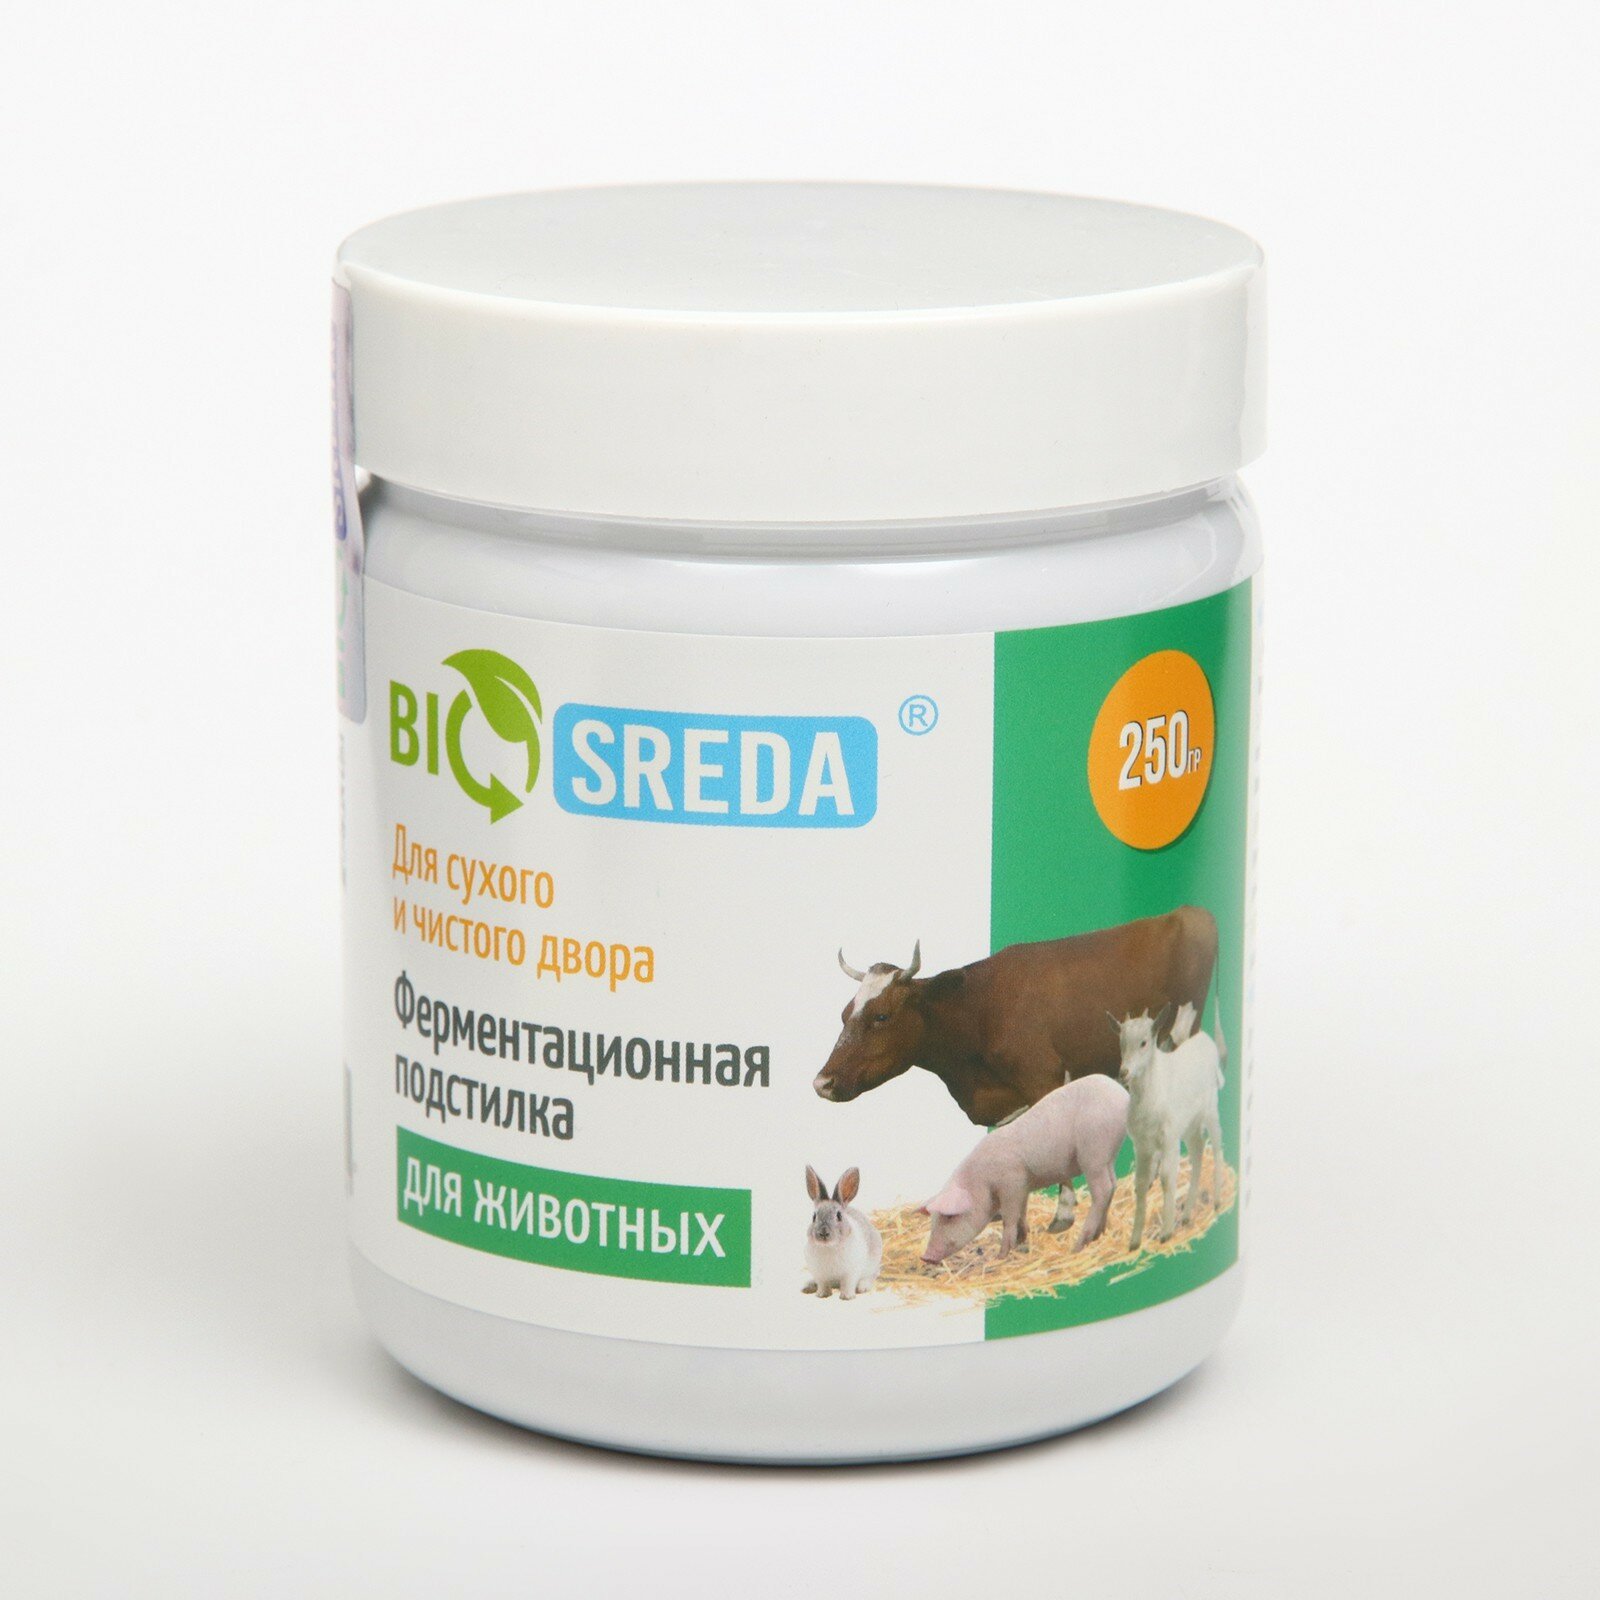 Подстилка Biosreda ферментационная для с/х животных, 250 гр